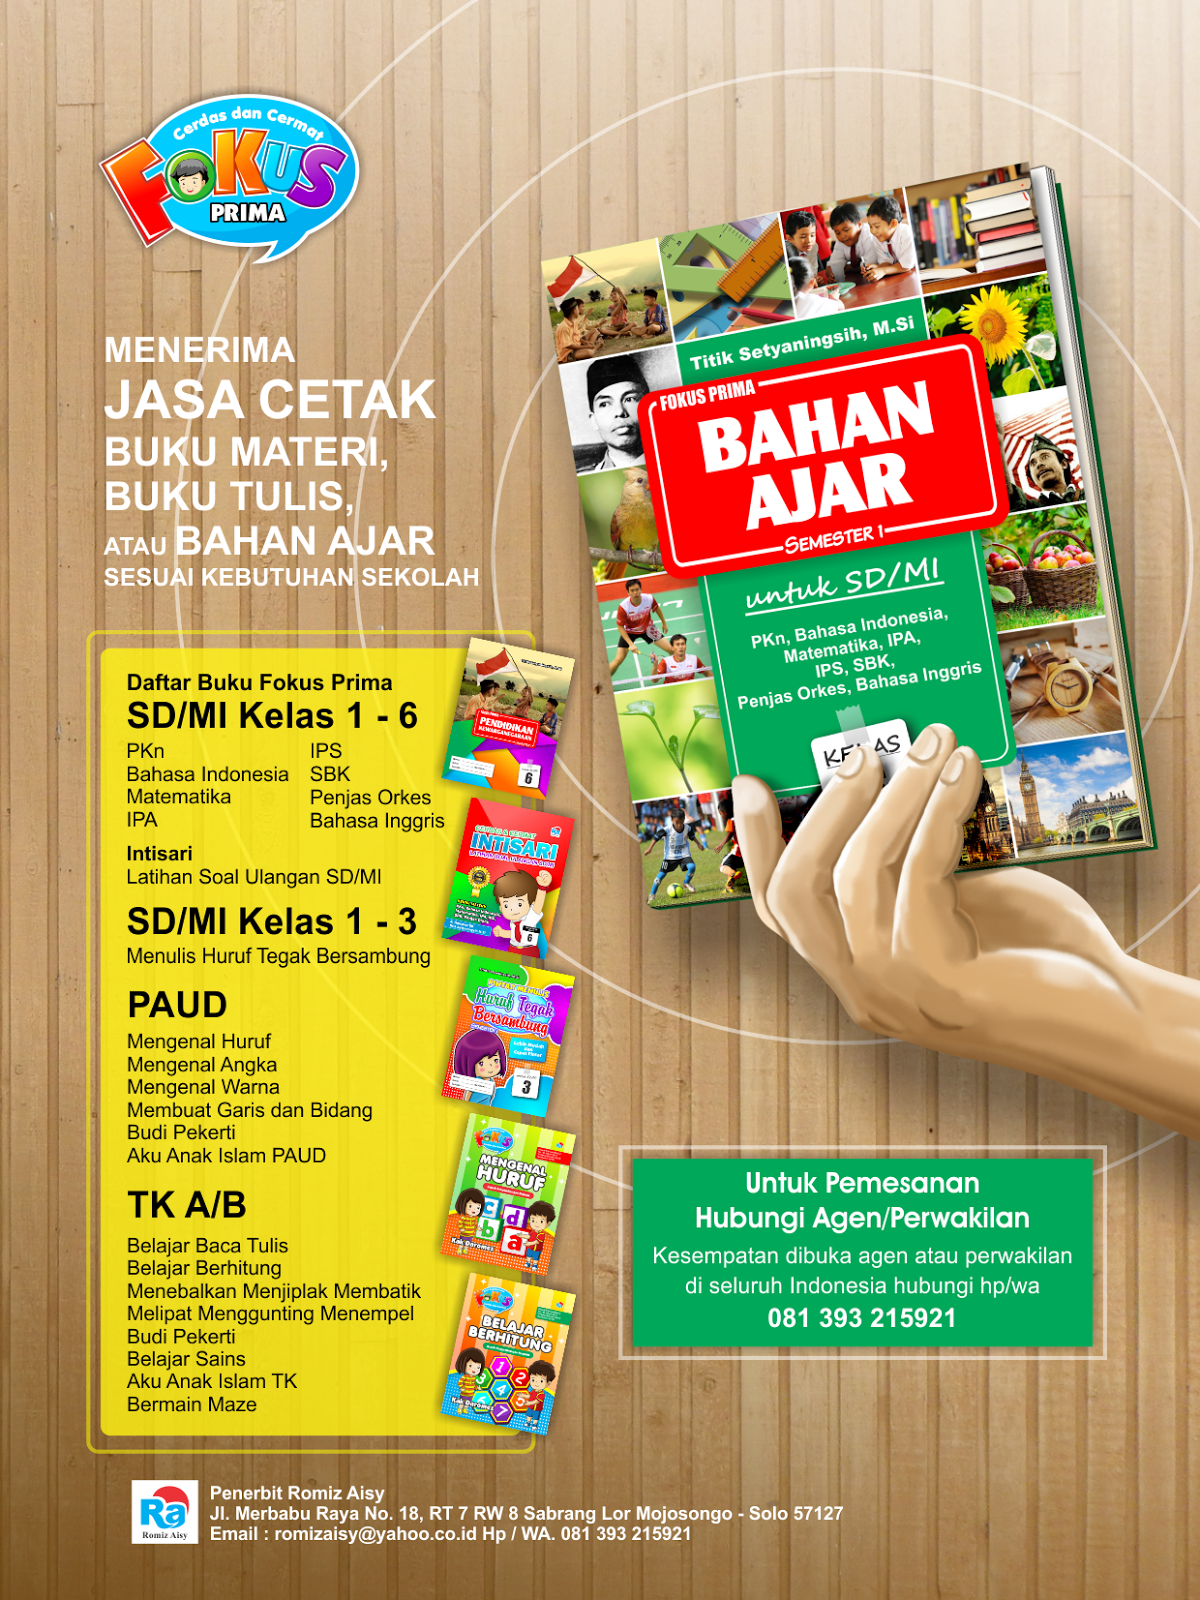 Peluang untuk mengembangkan pemasaran buku Paket TK dan Paud di wilayah kota Indonesia Hub HP WA